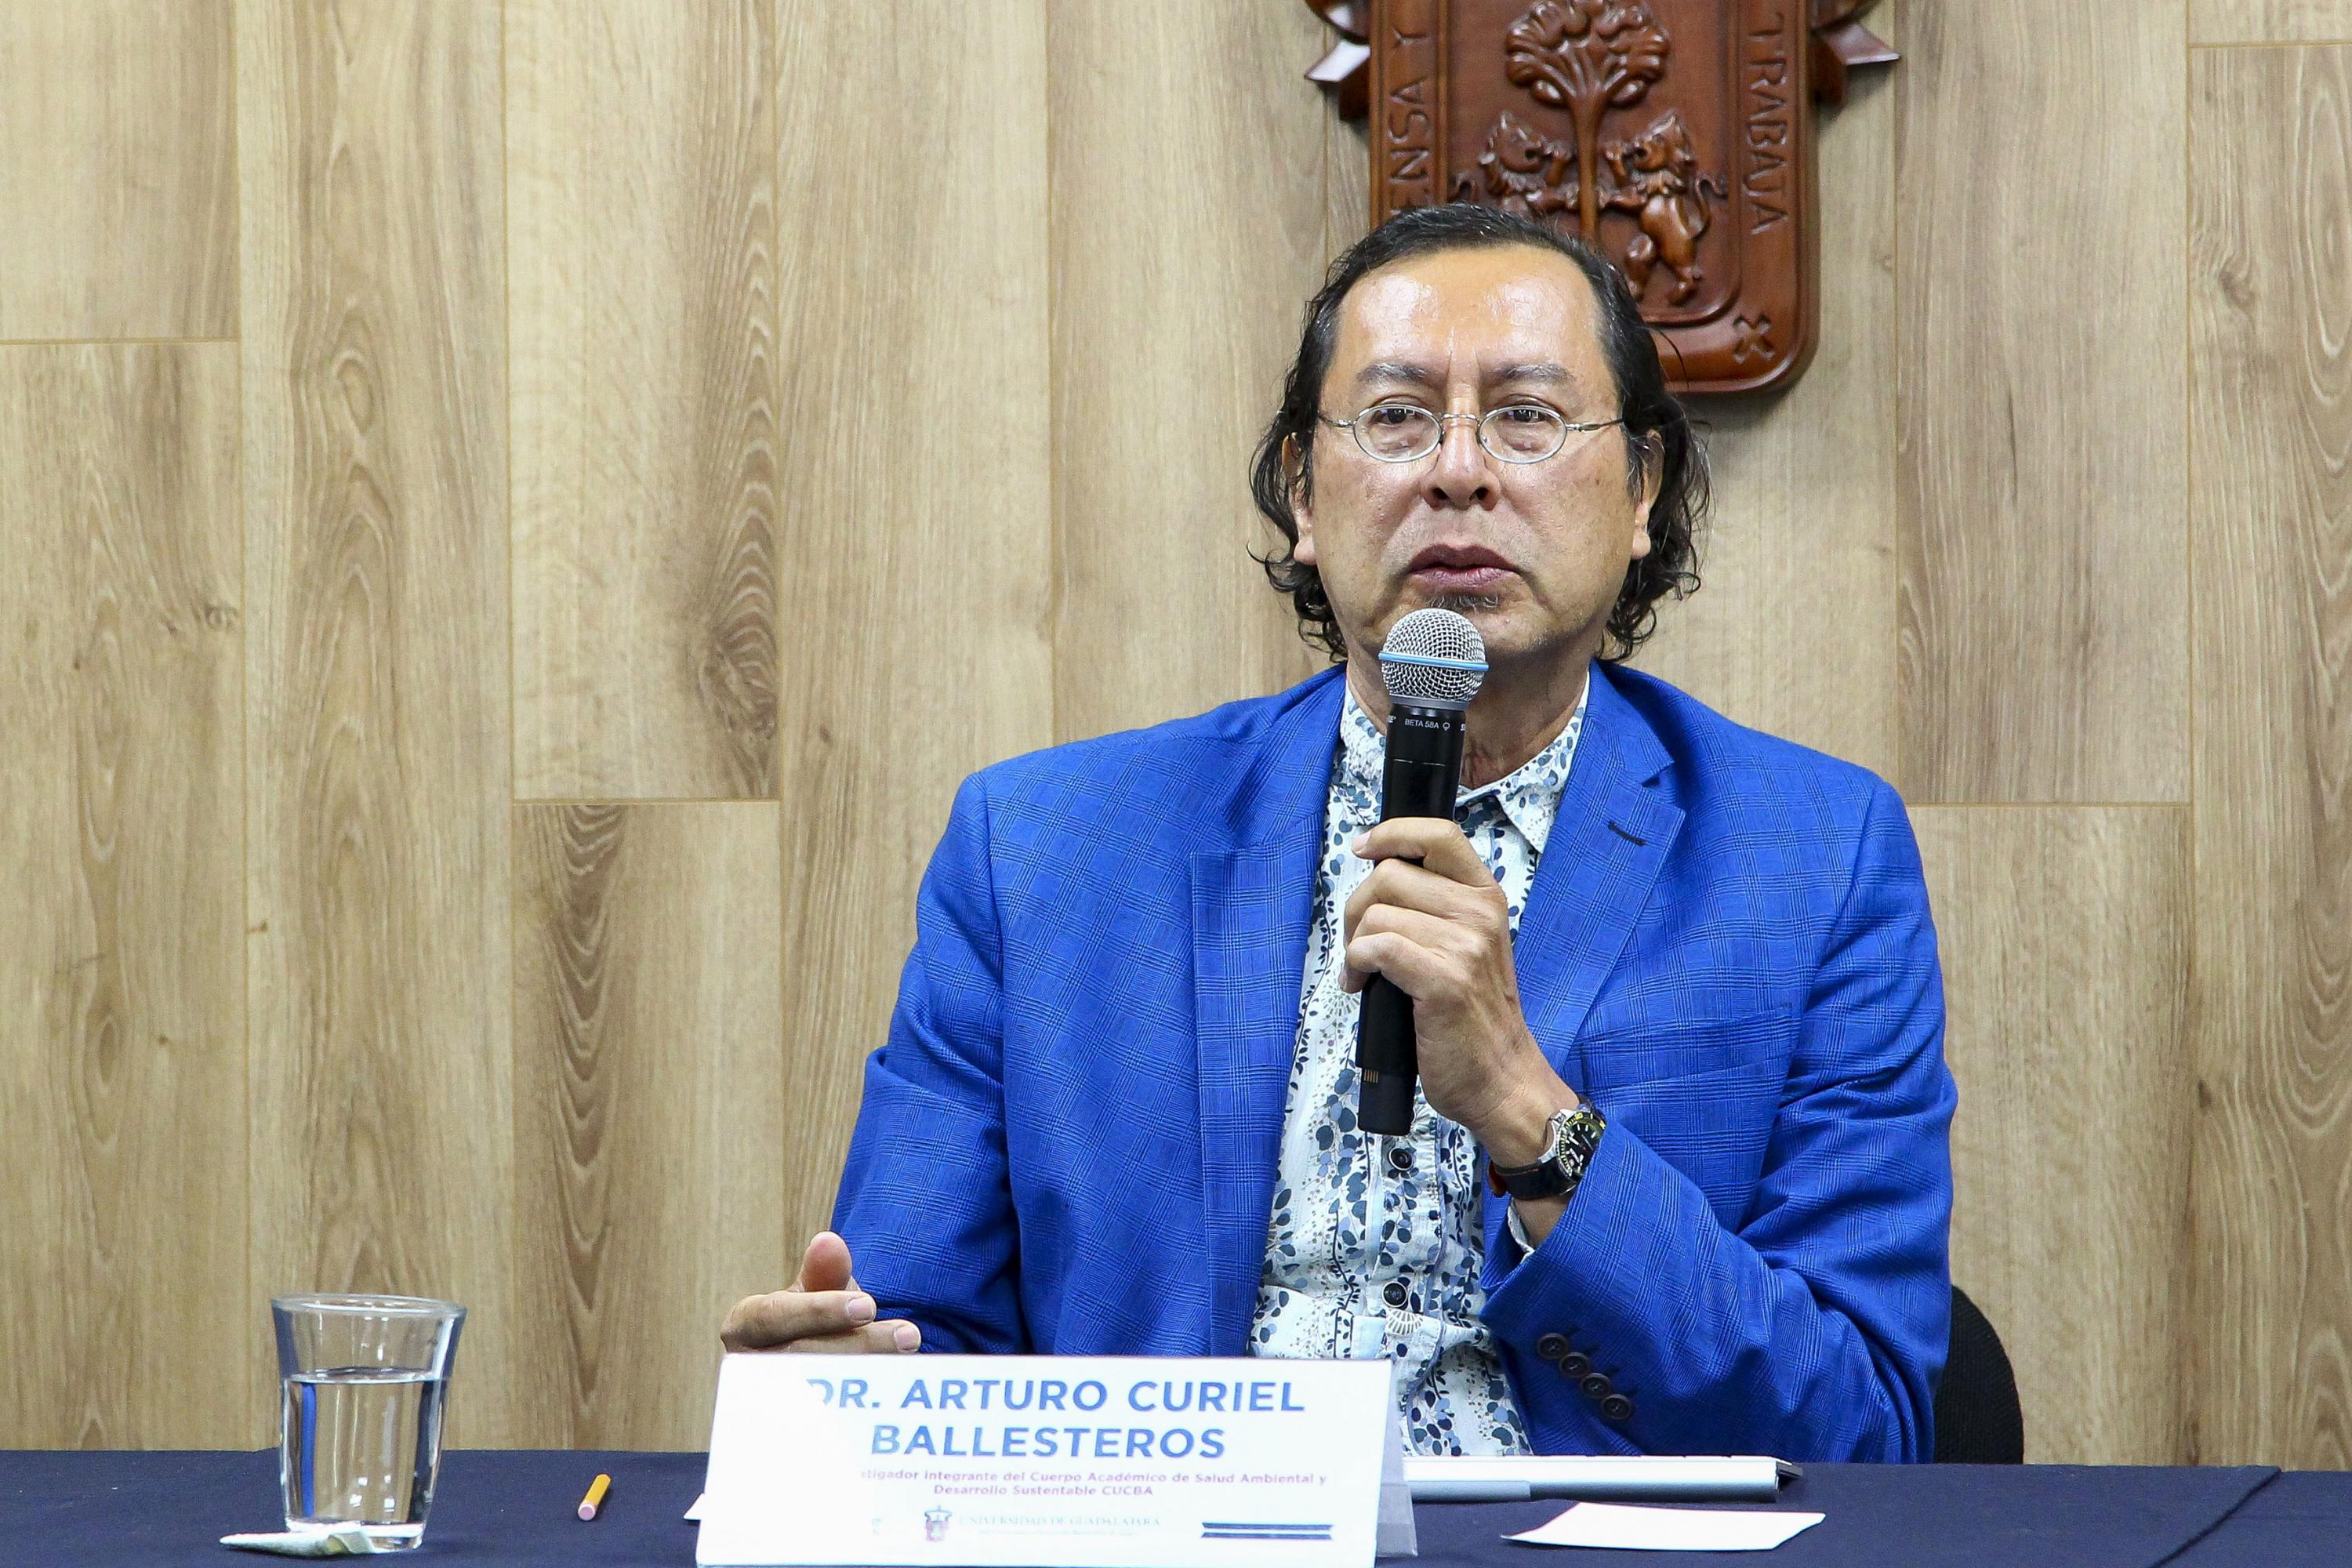 El doctor Arturo Curiel Ballesteros, profesor investigador del CUCBA